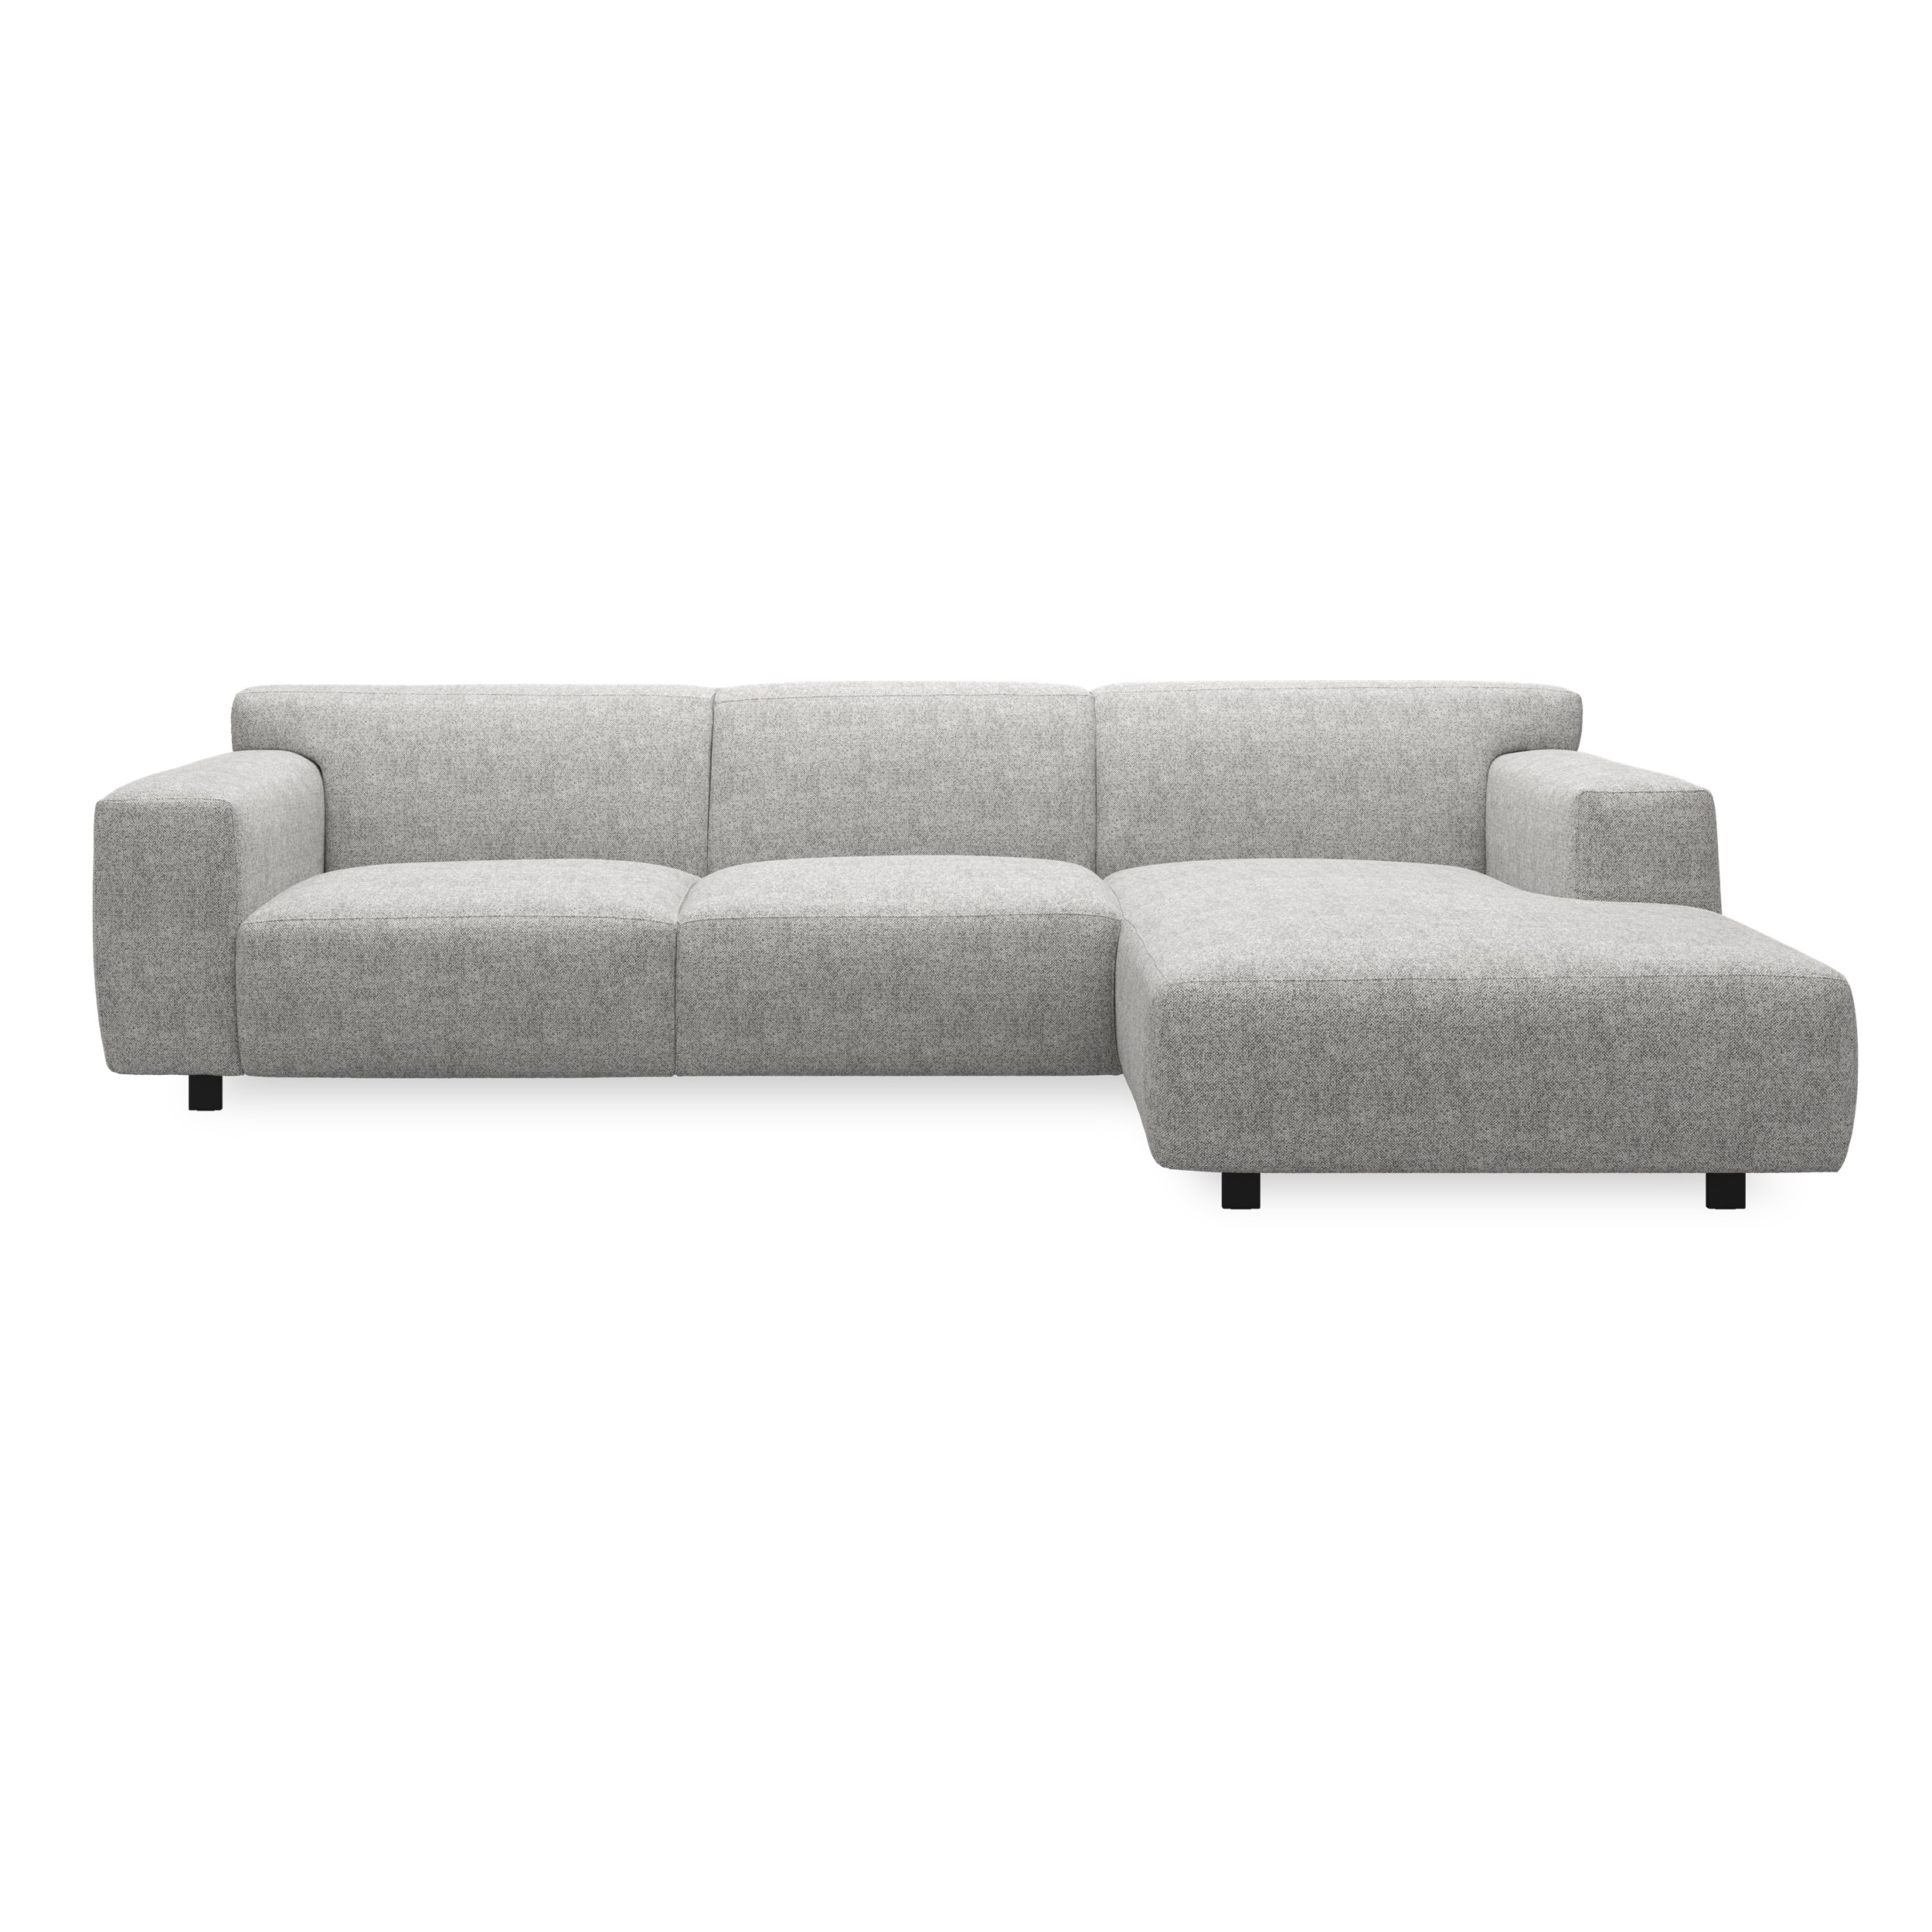 Siena højrevendt sofa med chaiselong 